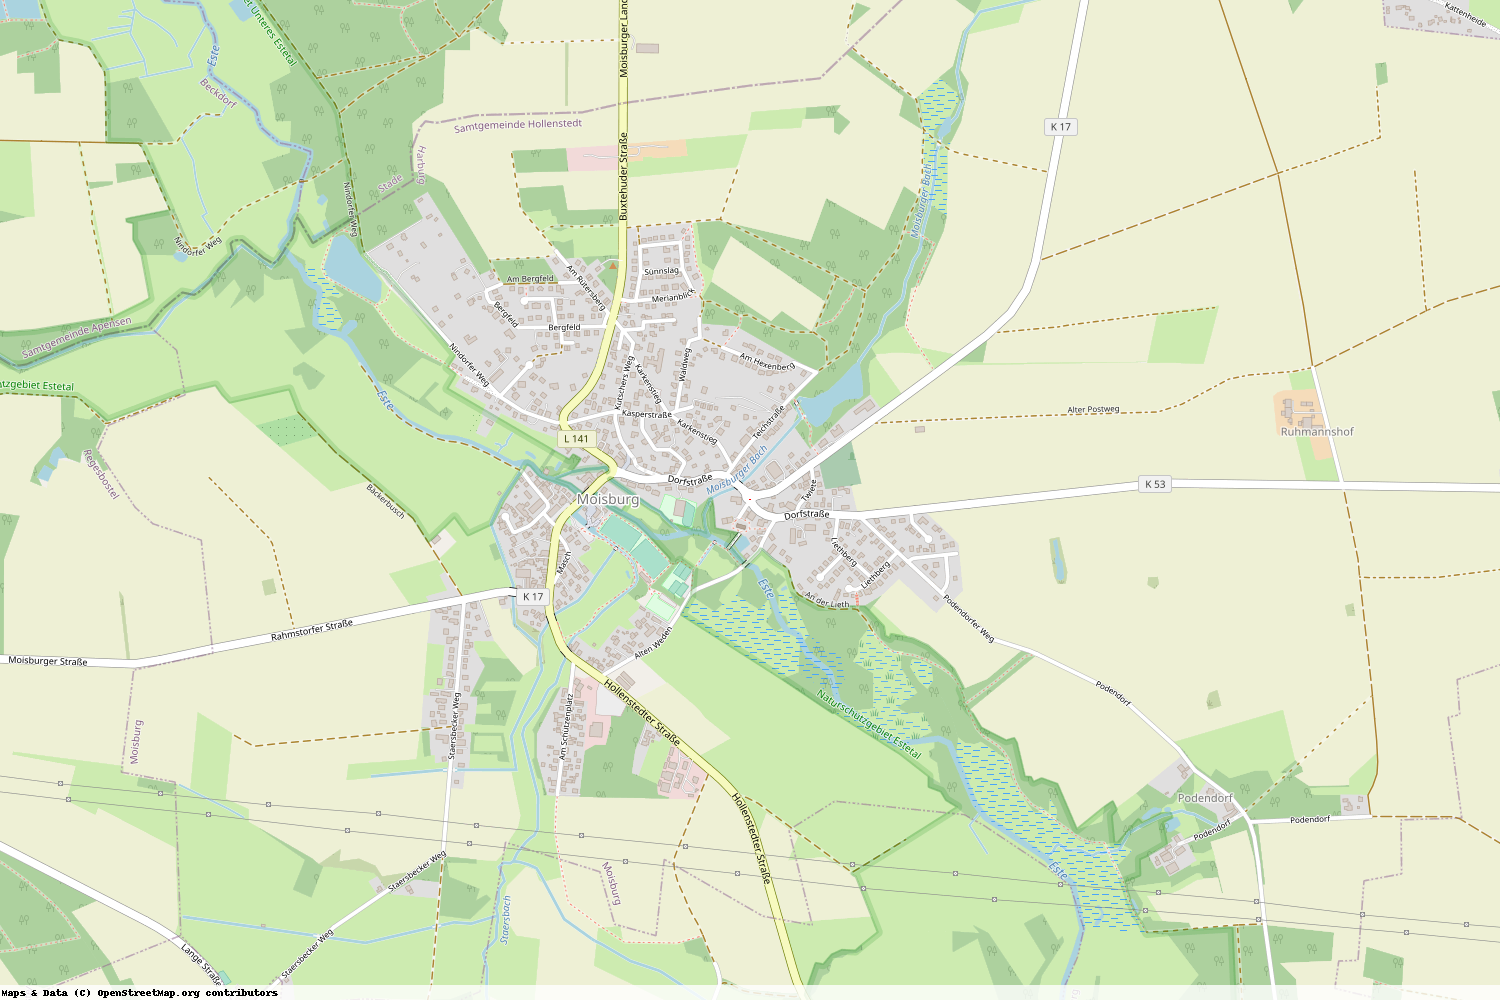 Ist gerade Stromausfall in Niedersachsen - Harburg - Moisburg?